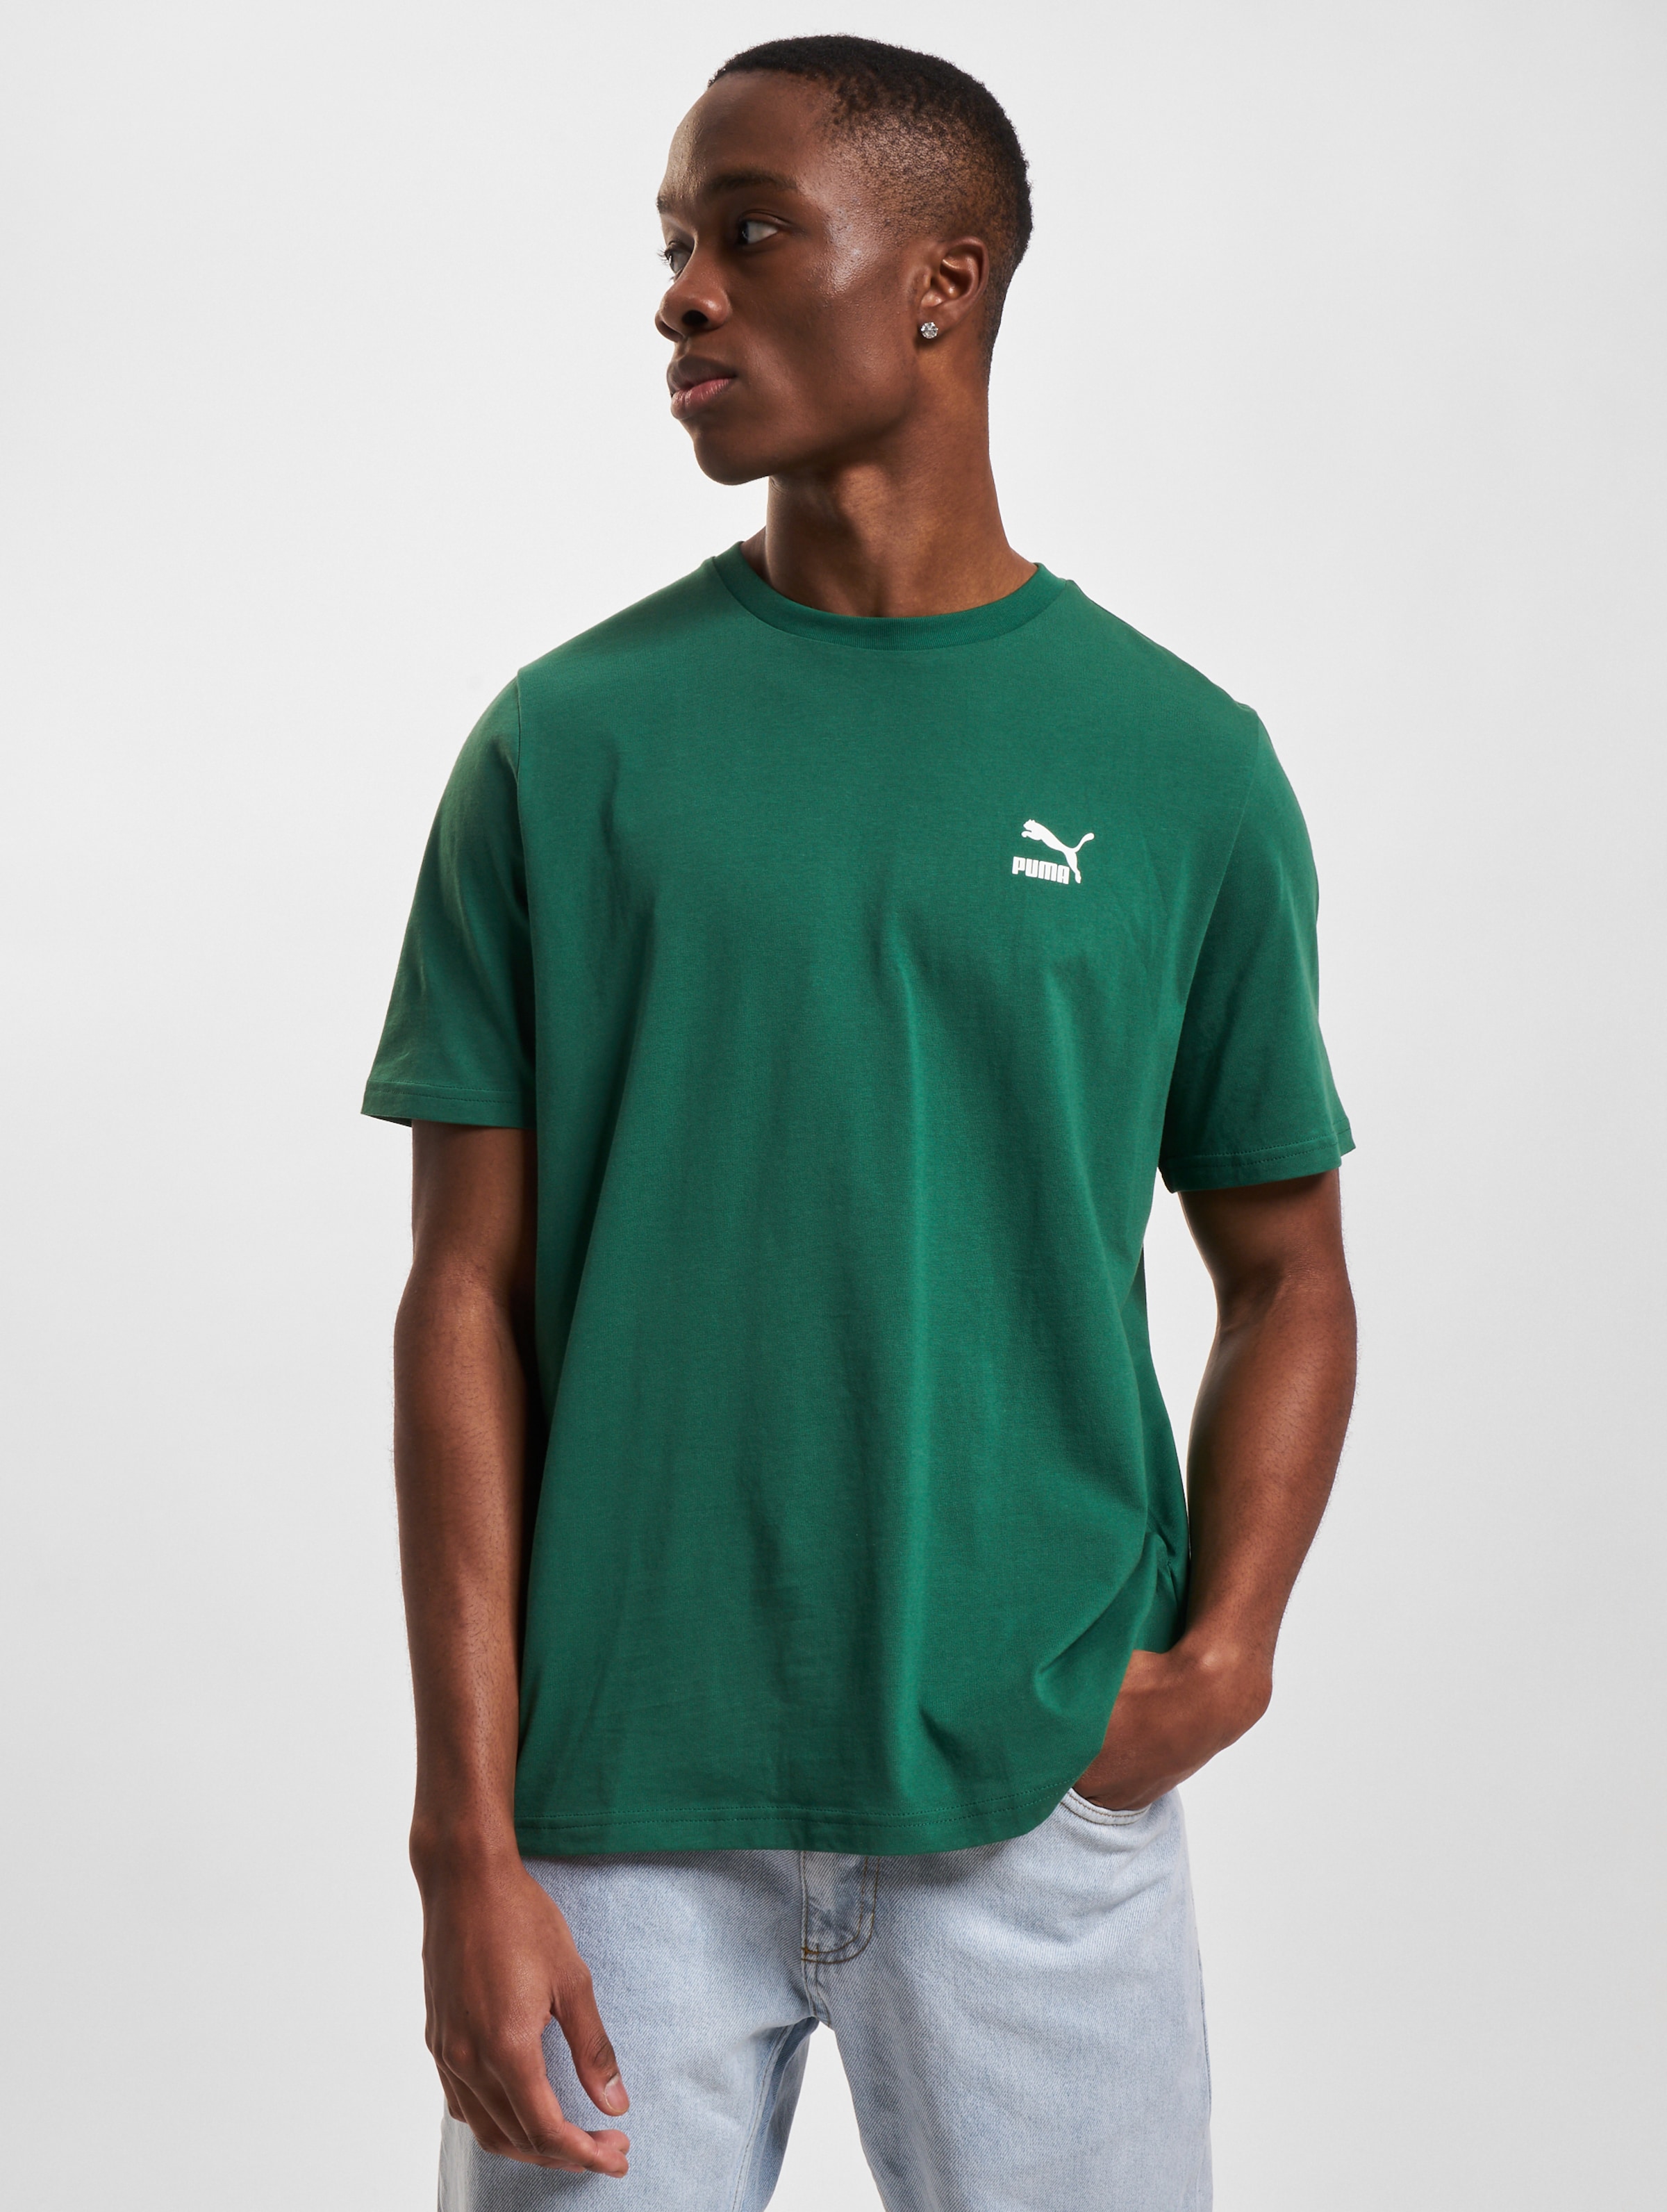 Puma T-Shirt Mannen op kleur groen, Maat 4XL